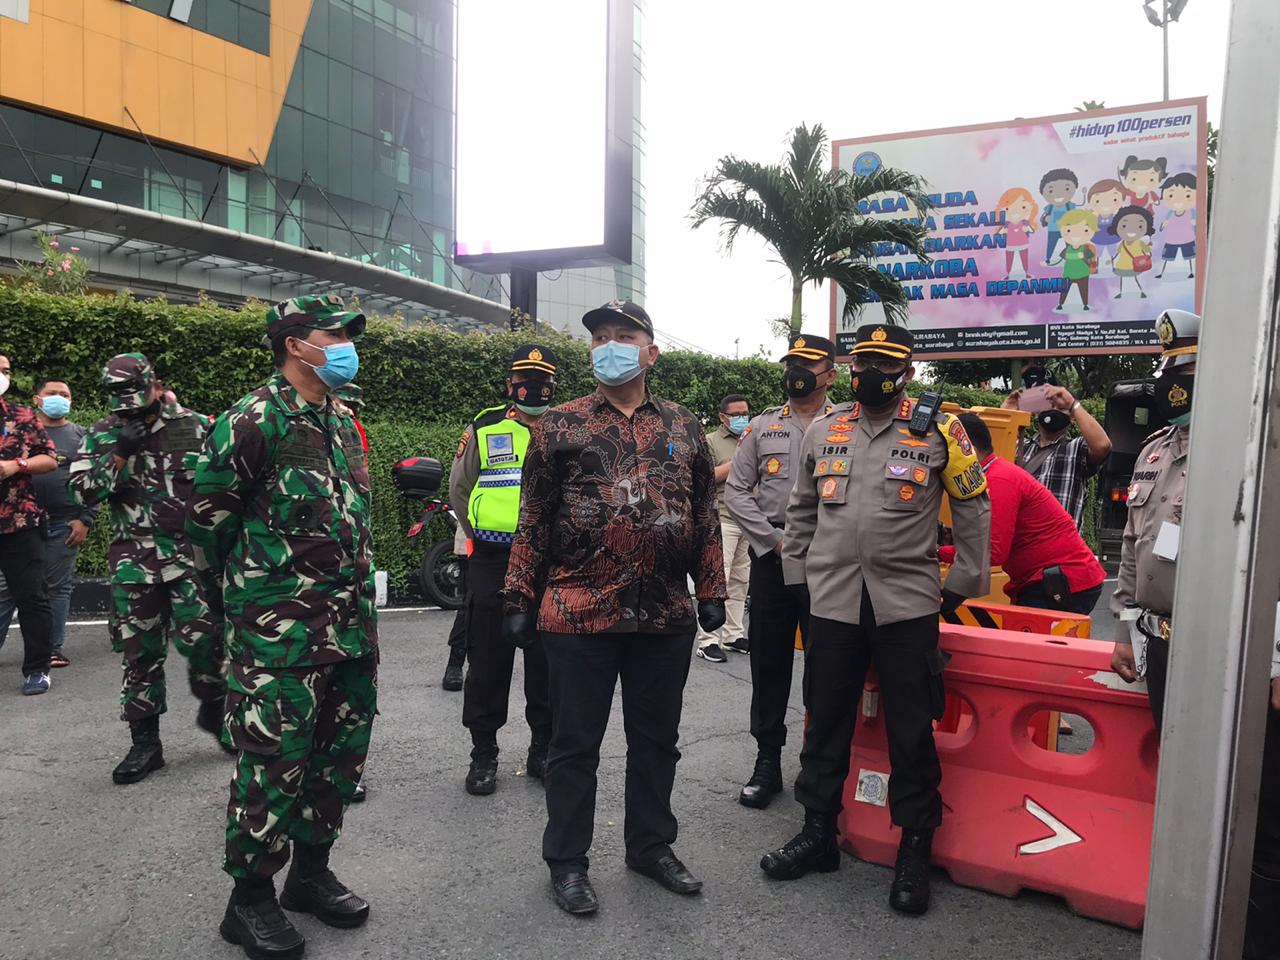 Pemerintah Berencana Perpanjang PPKM, Surabaya Mengaku Sudah Siap